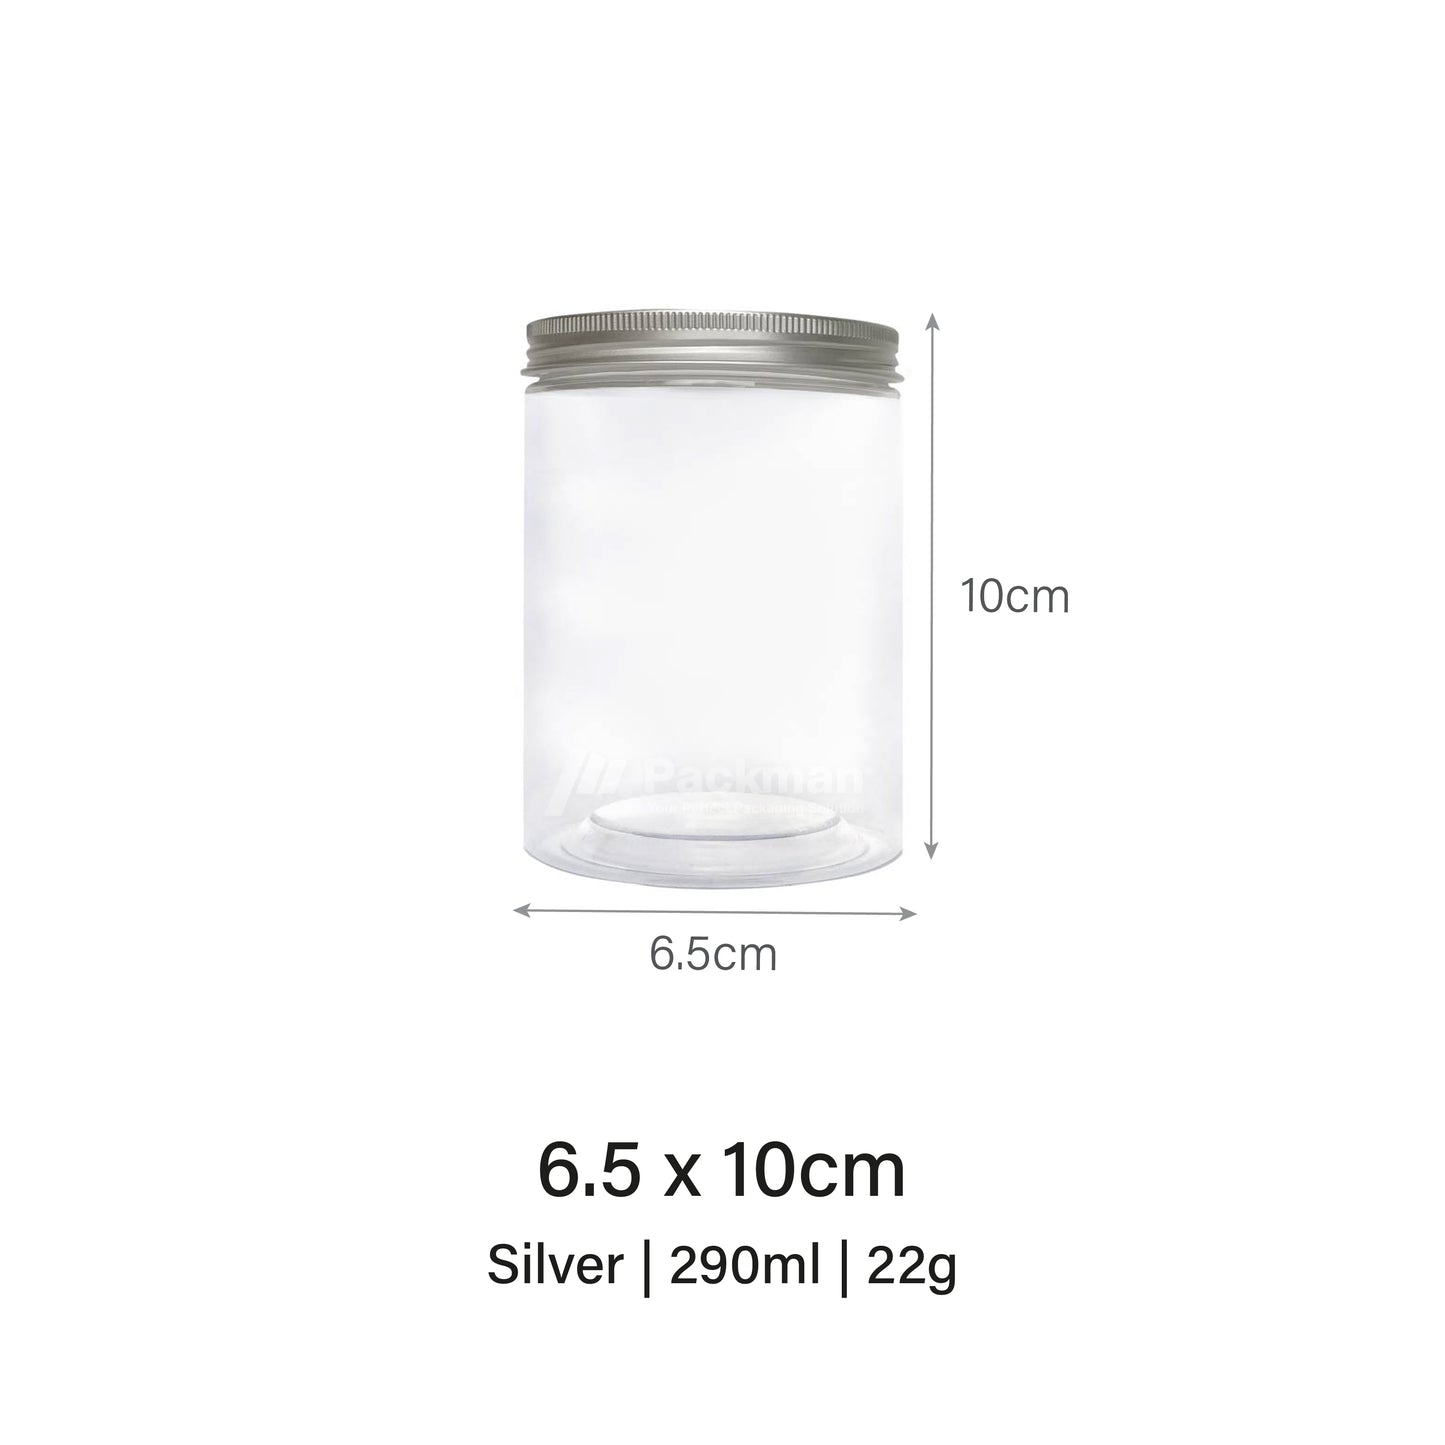 6.5 x 10cm Silver Plastic Jar (9pcs)